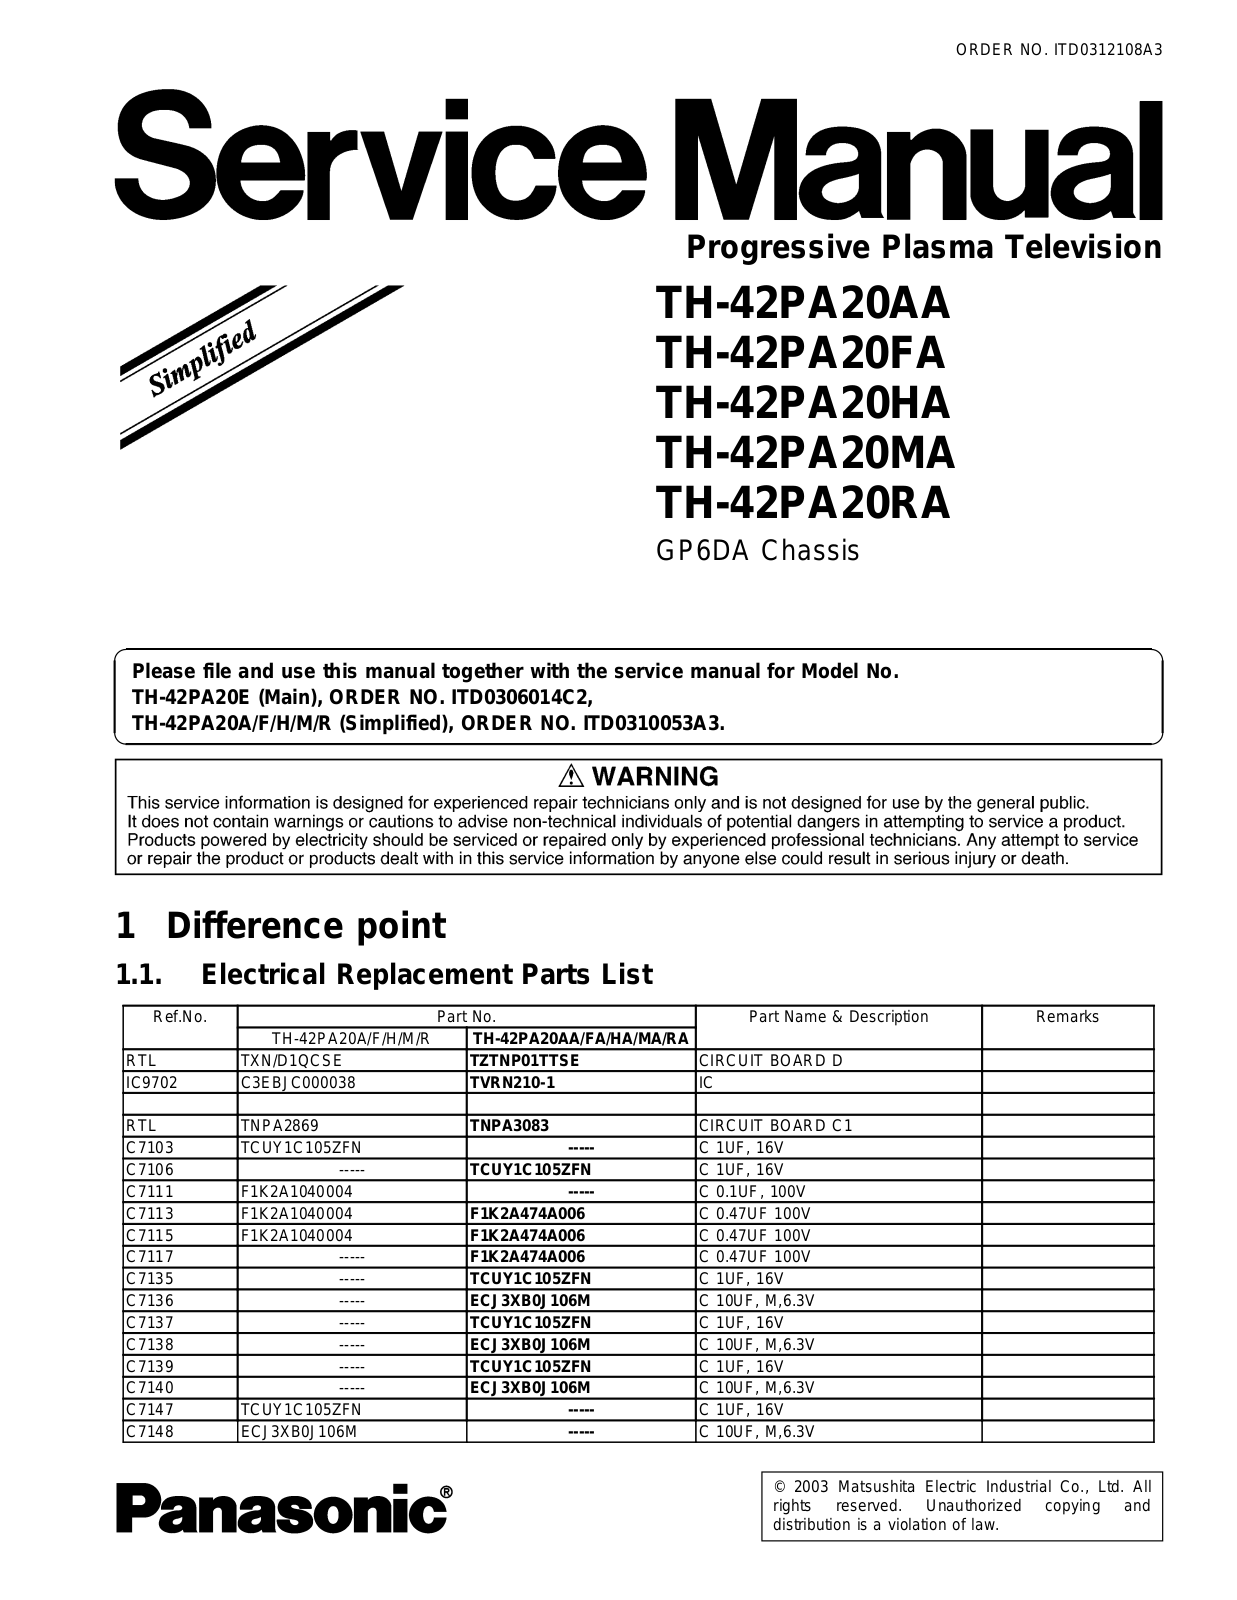 Panasonic GP6DA, TH-42PA20AA, TH-42PA20FA, TH-42PA20HA, TH-42PA20MA Service Manual